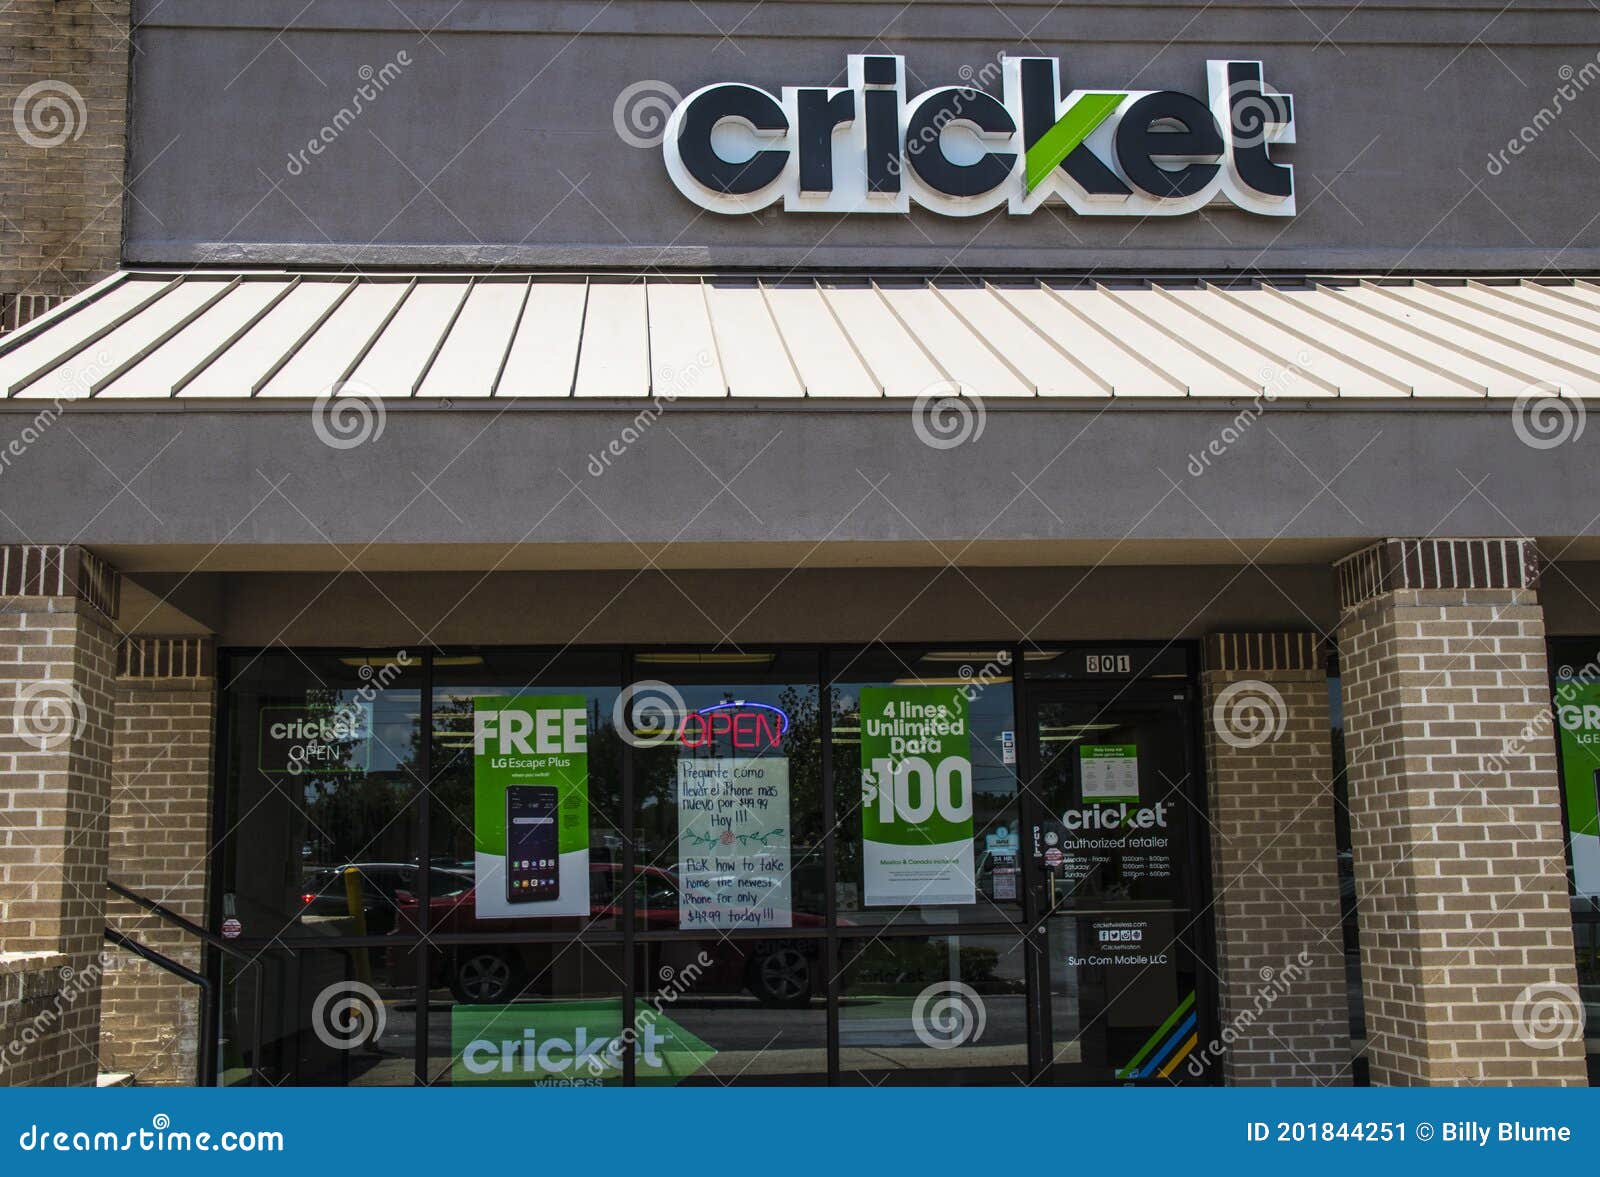 cricket mobile store locator